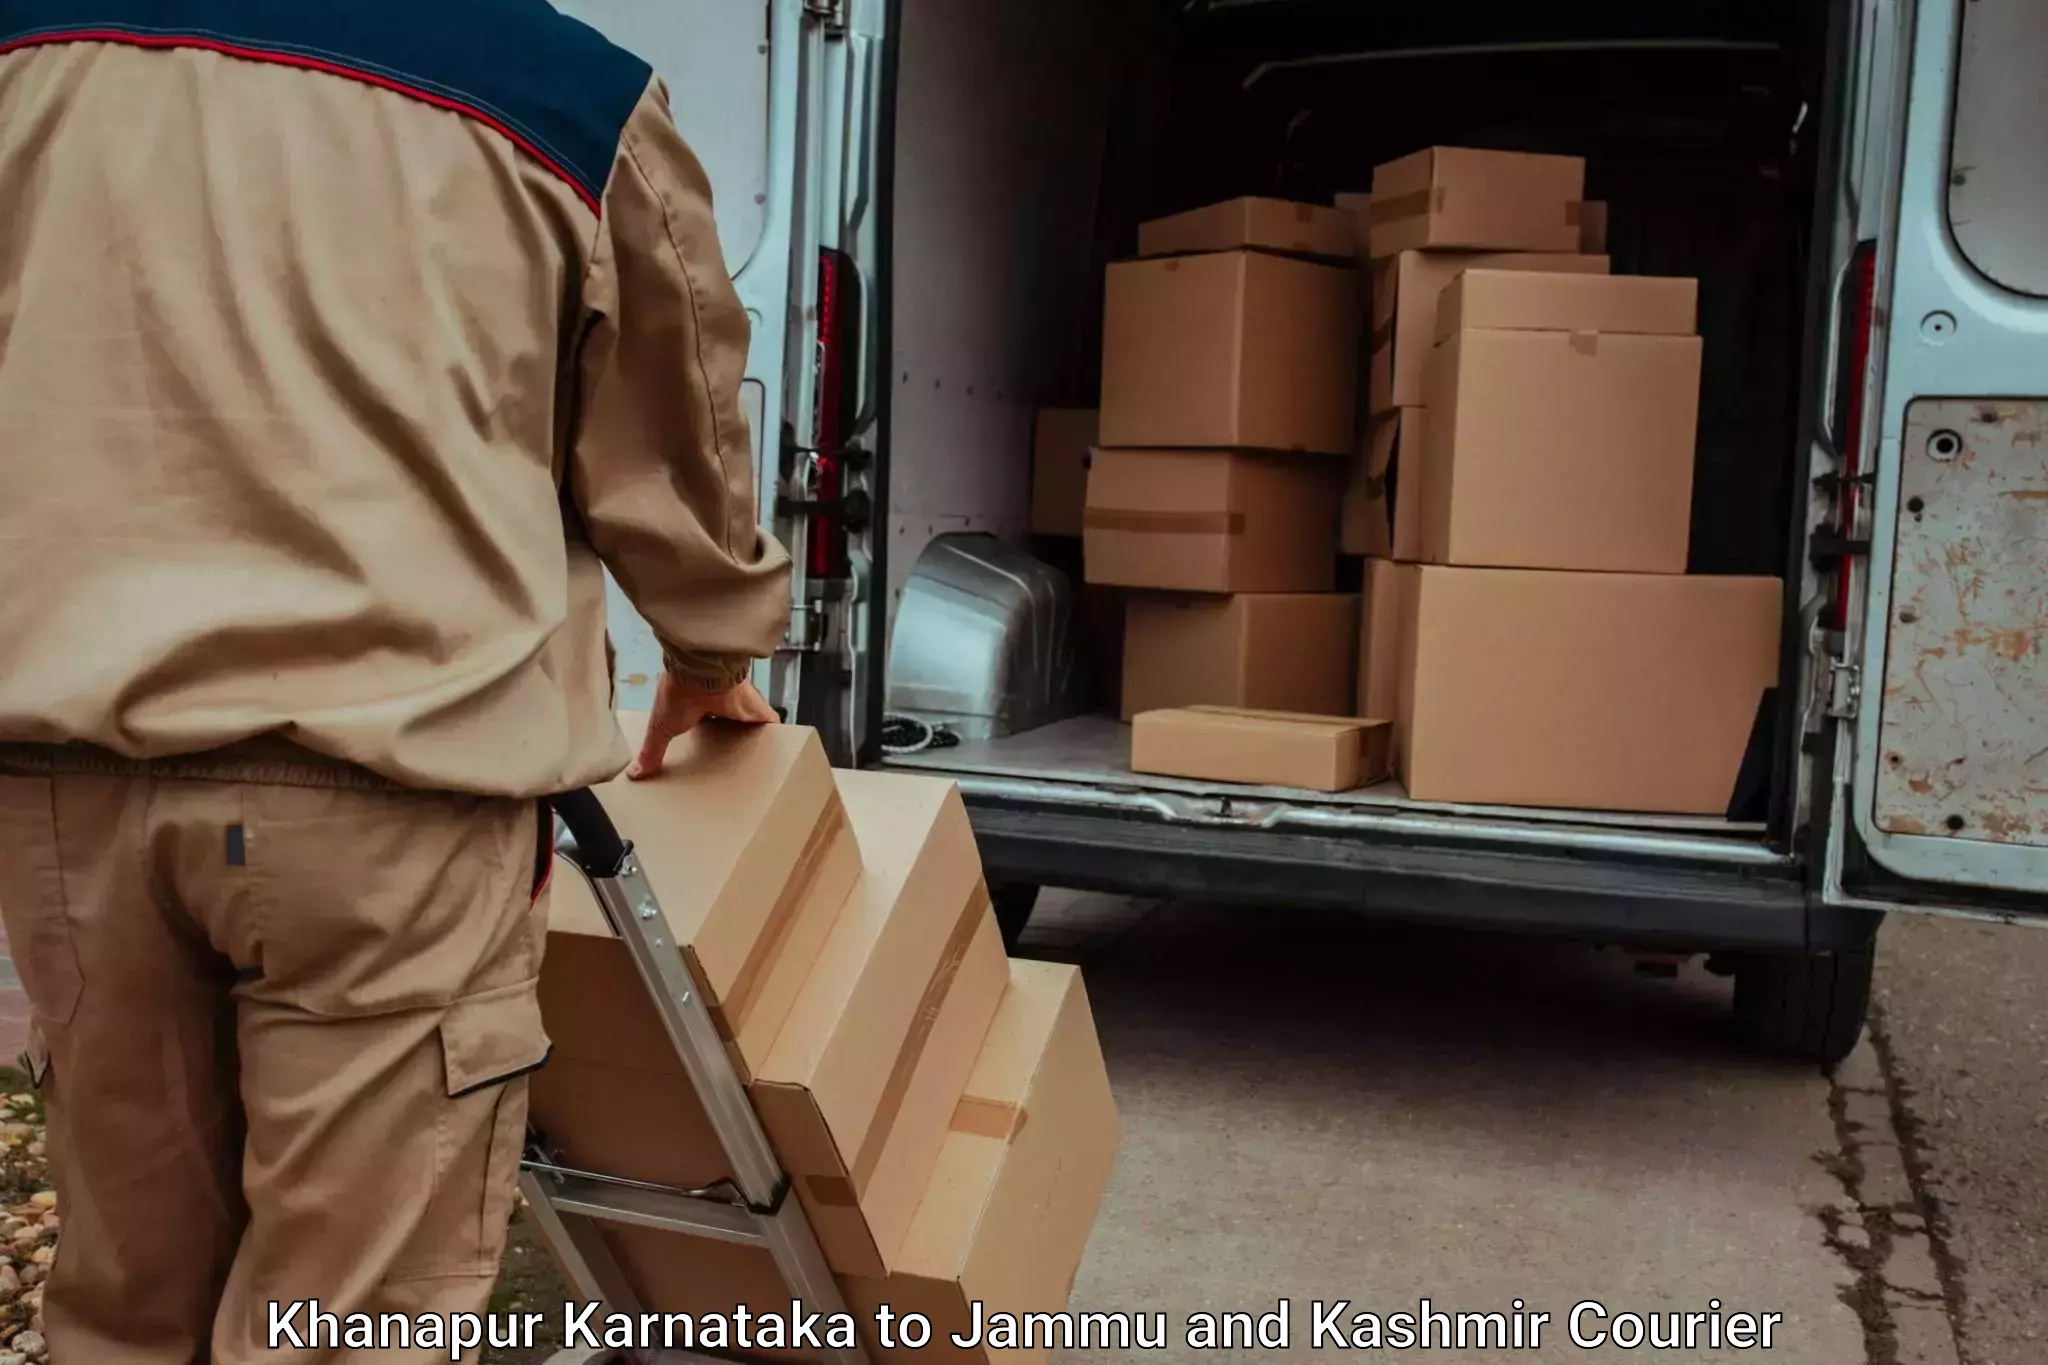 High-quality baggage shipment Khanapur Karnataka to University of Kashmir Srinagar